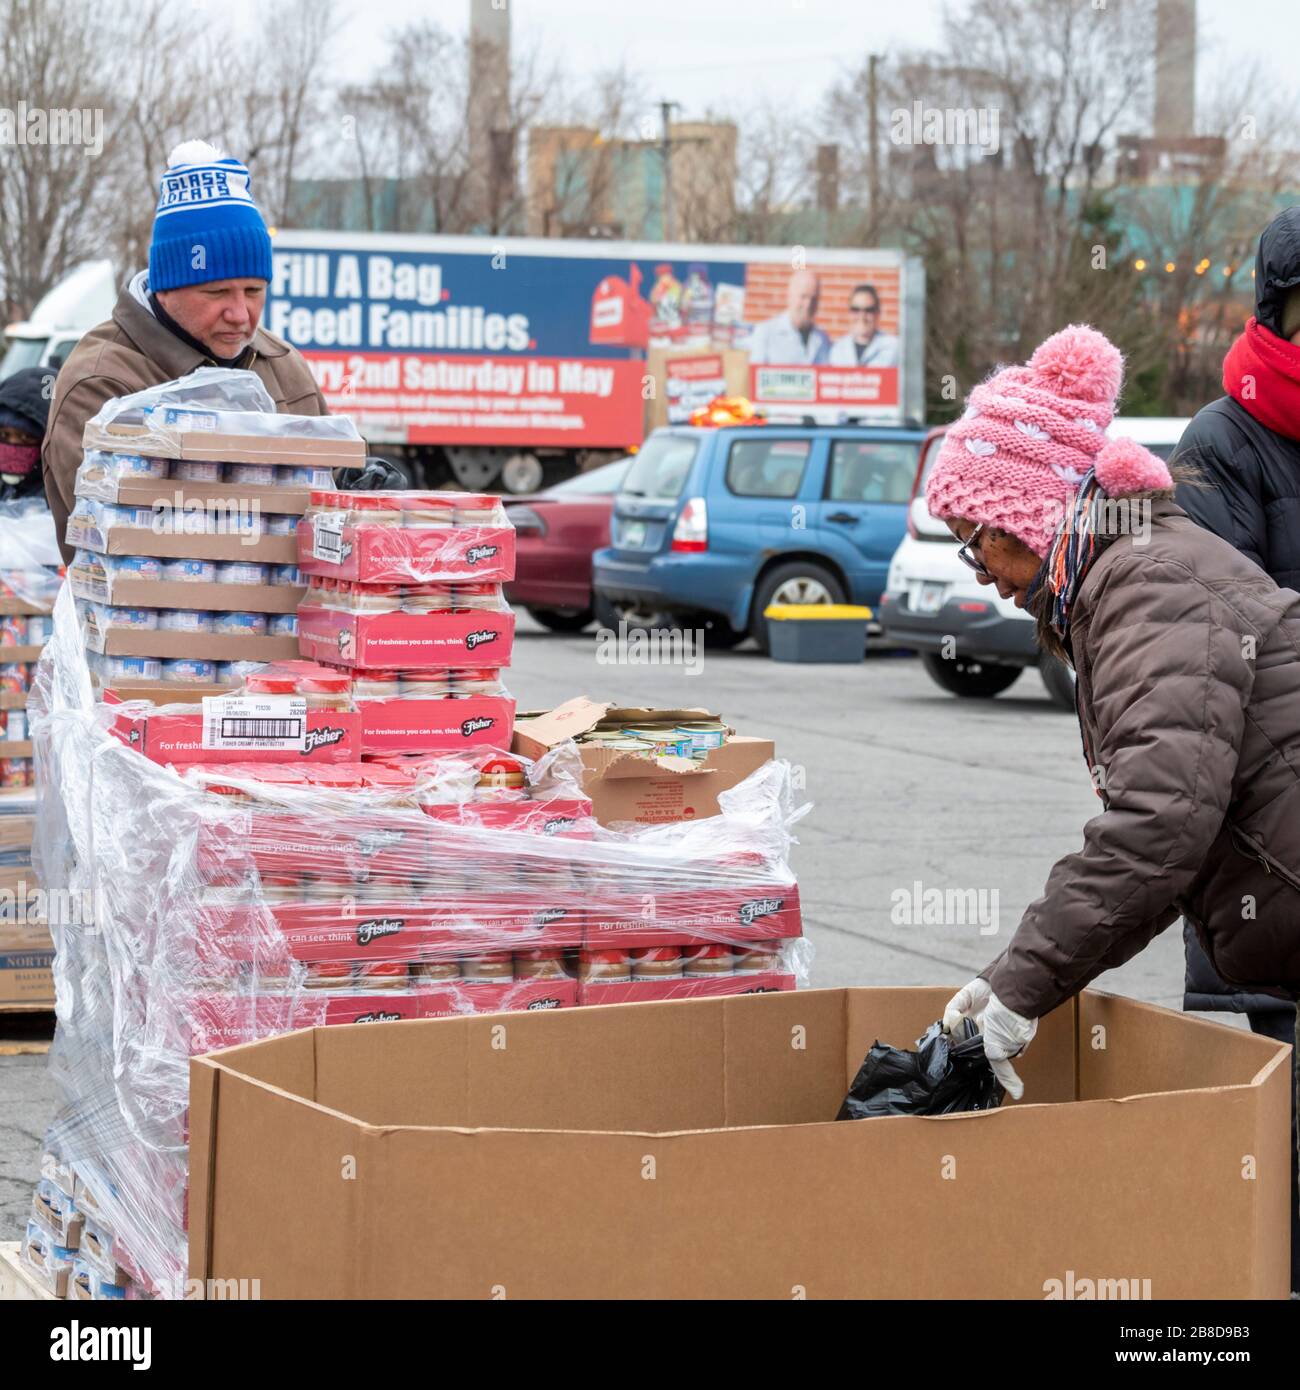 Detroit, Michigan, Stati Uniti. 21 Mar 2020. Durante la crisi del coronavirus, la Gleaners Community Food Bank distribuisce cibo gratuito ai residenti in difficoltà nel sud-ovest di Detroit. Credit: Jim West/Alamy Live News Foto Stock